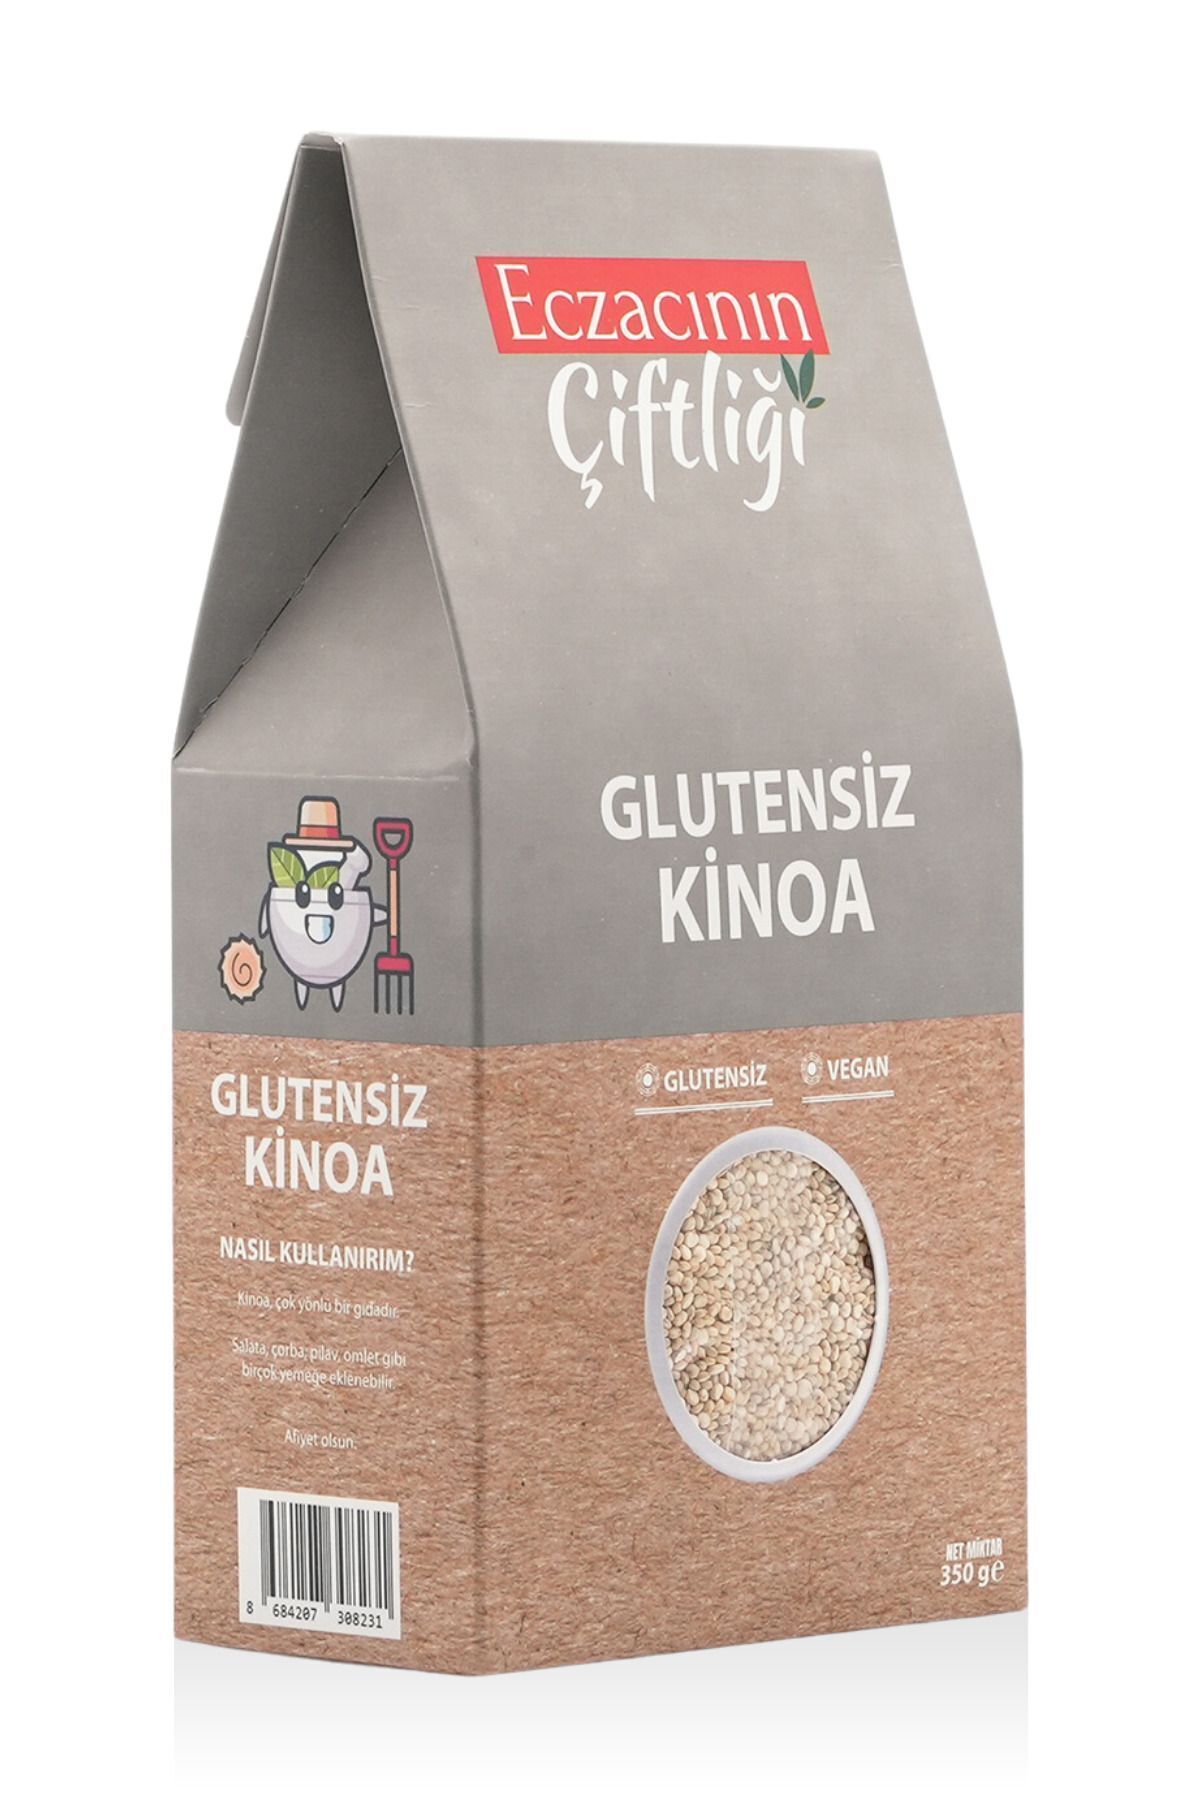 Eczacının Çiftliği Glutensiz Vegan Kinoa 350 gr - Quinoa / Yüksek Protein Tuzsuz